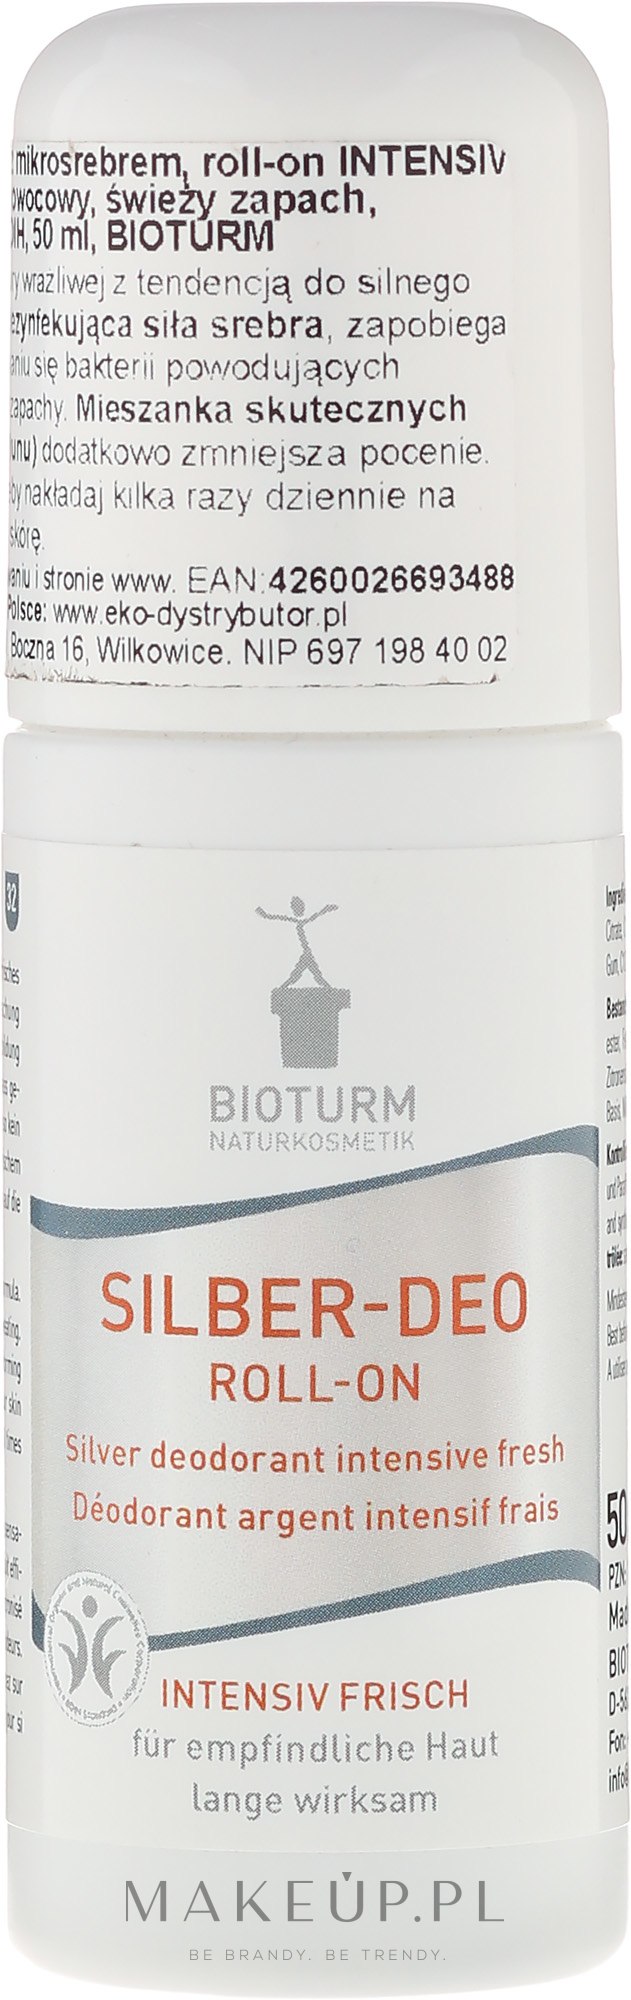 Srebrny dezodorant w kulce Intensywna świeżość - Bioturm Silver Deodorant Intensive Fresh Roll-On No. 32 — Zdjęcie 50 ml